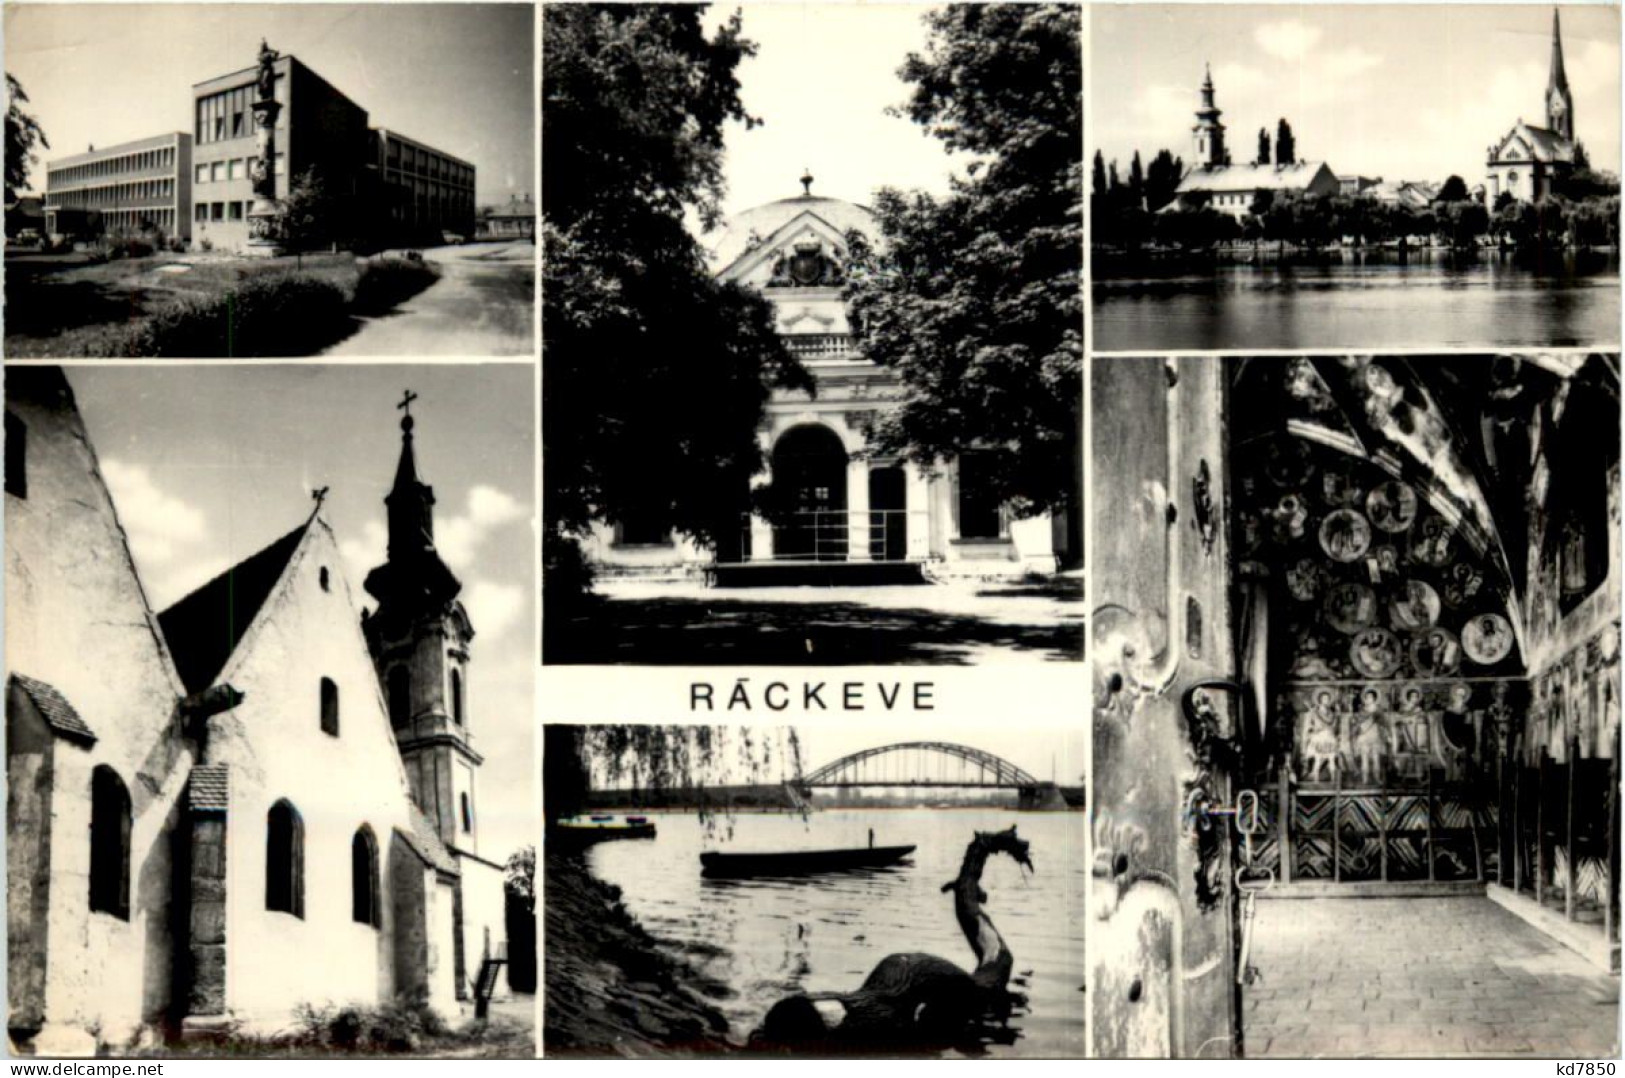 Rackeve - Hungary